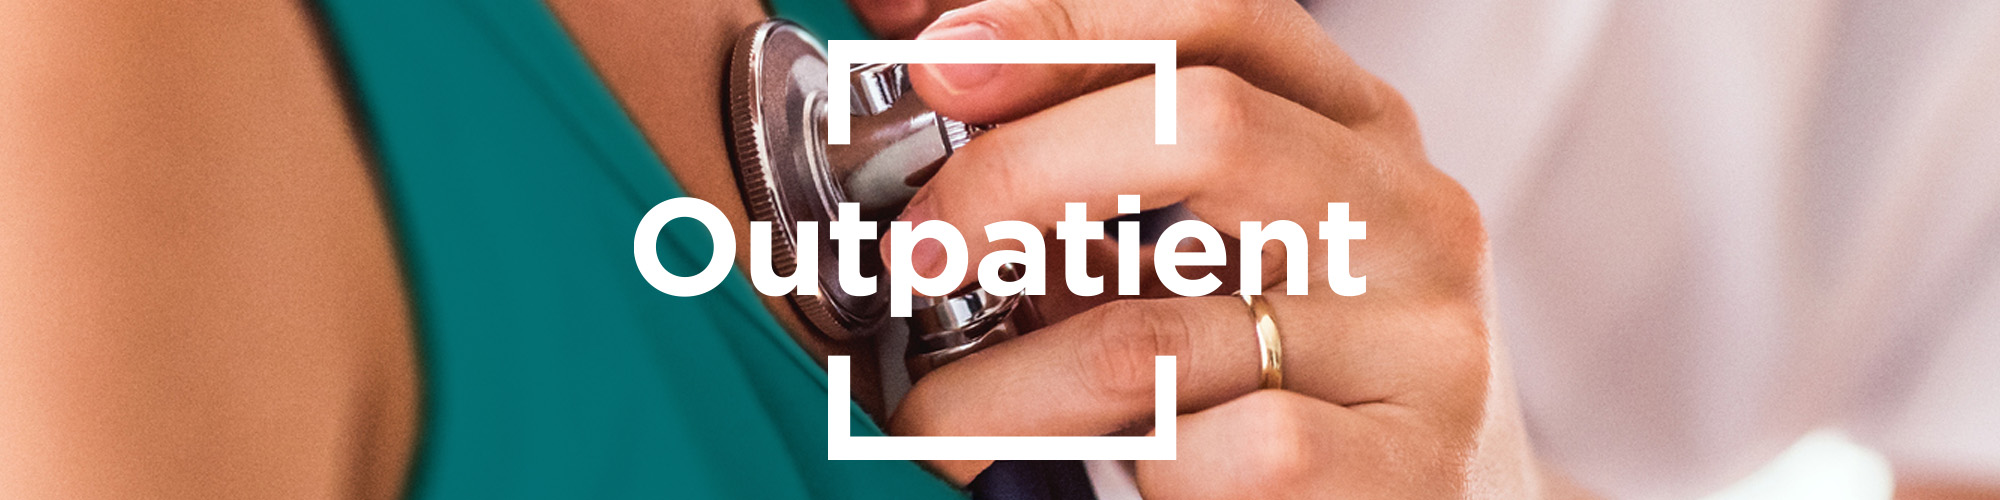 Outpatient Patient Experience Surveys